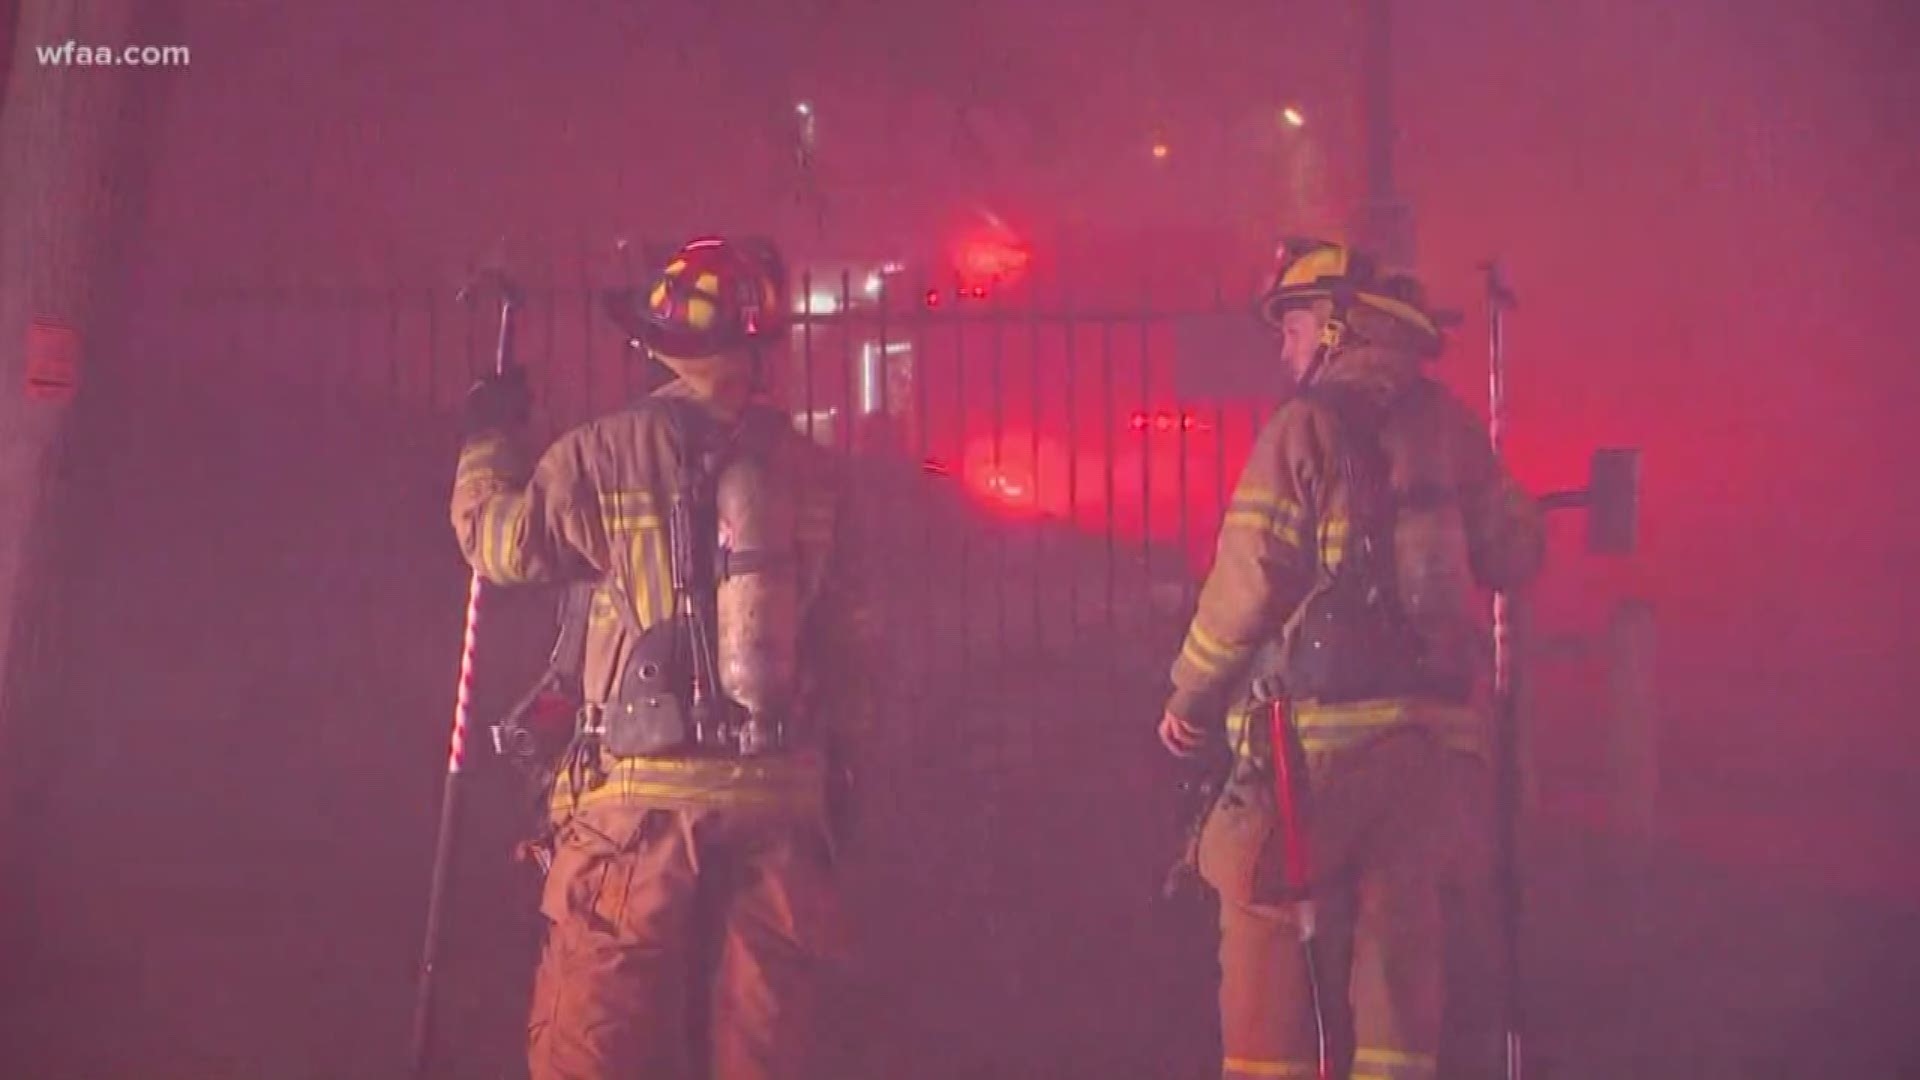 Firefighters battle 3-alarm fire in Dallas